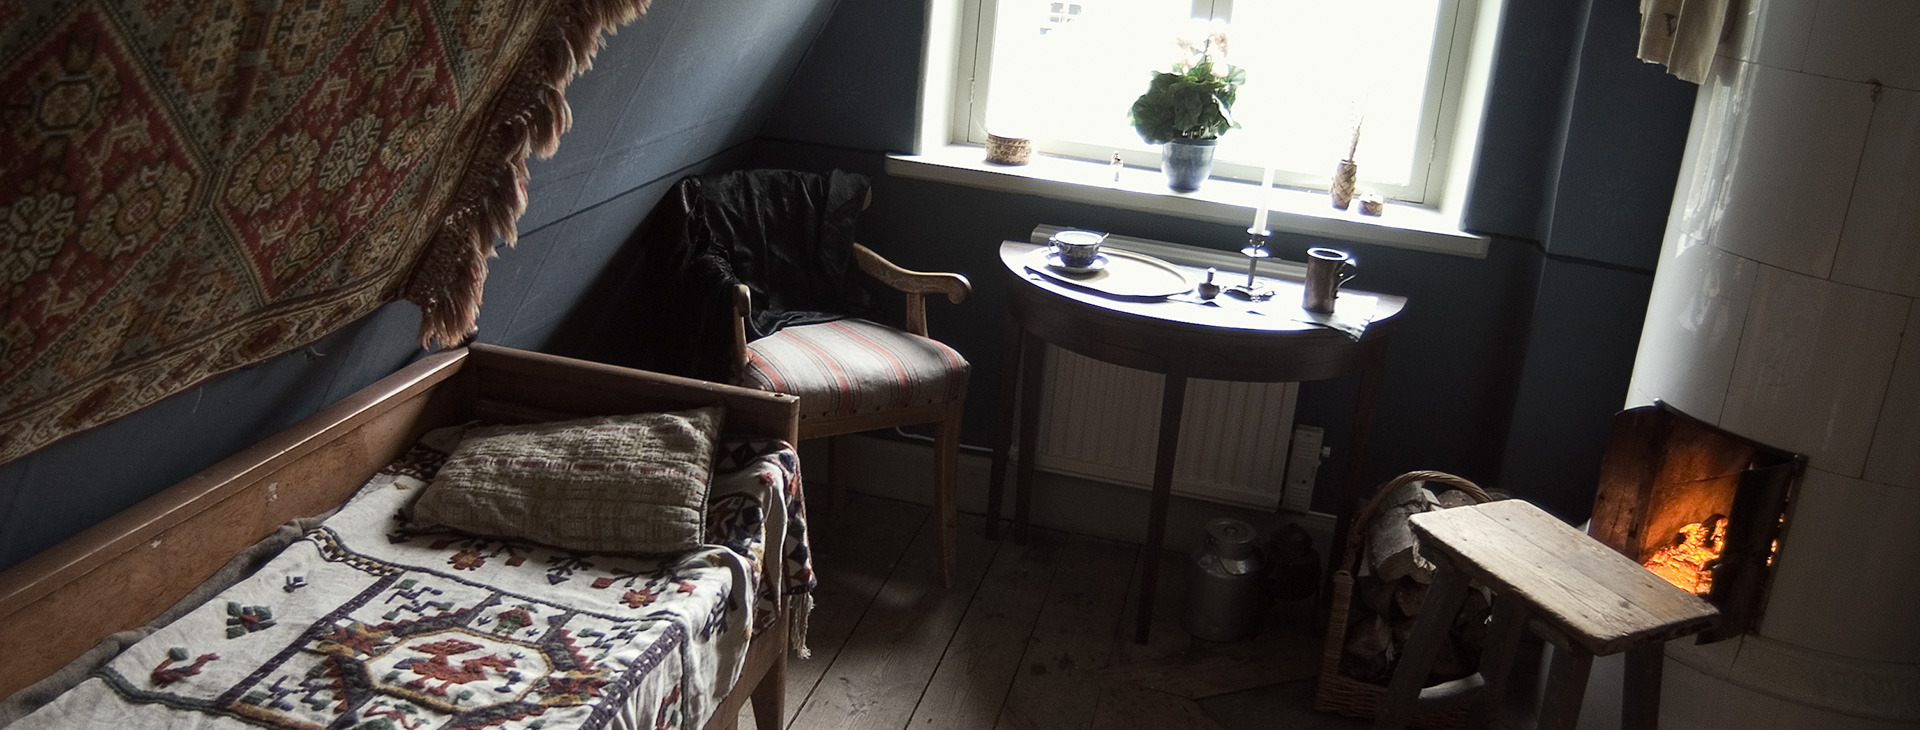 Ett rum med säng, stol, bord och en kamin som det brinner i.